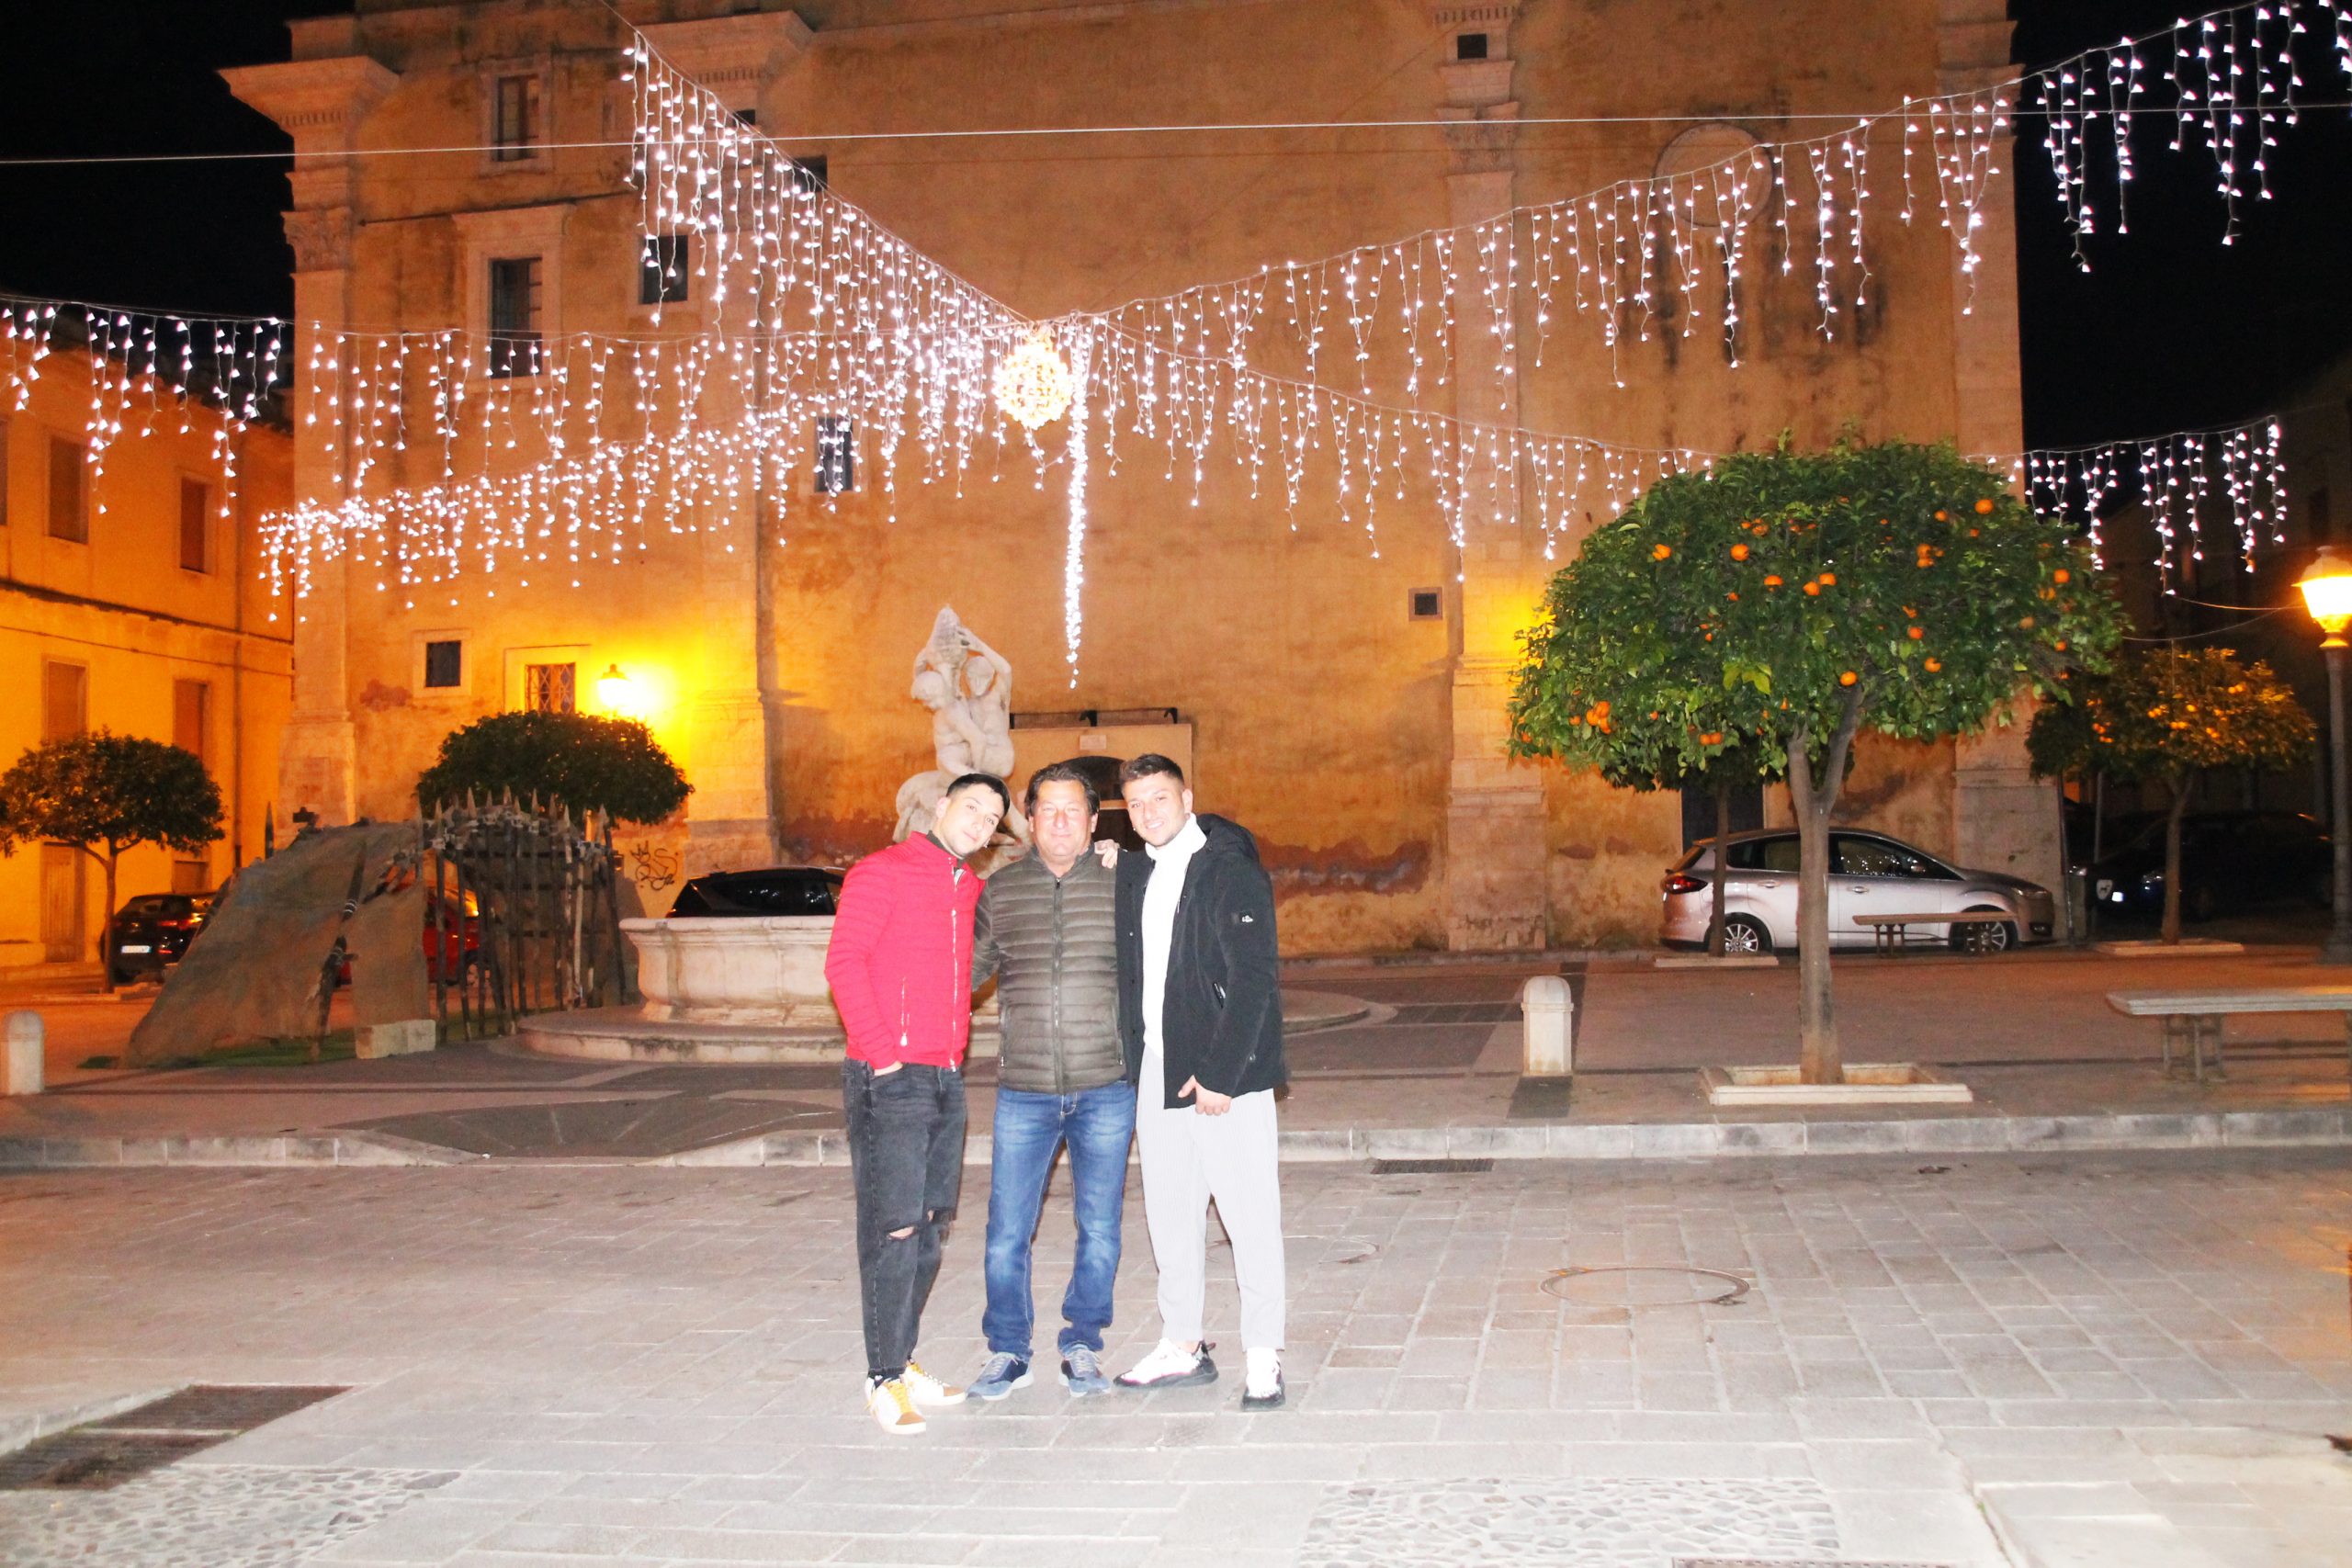 Anche quest’anno Piazza Masaniello si illumina a festa, il regalo della famiglia Rendo alla città